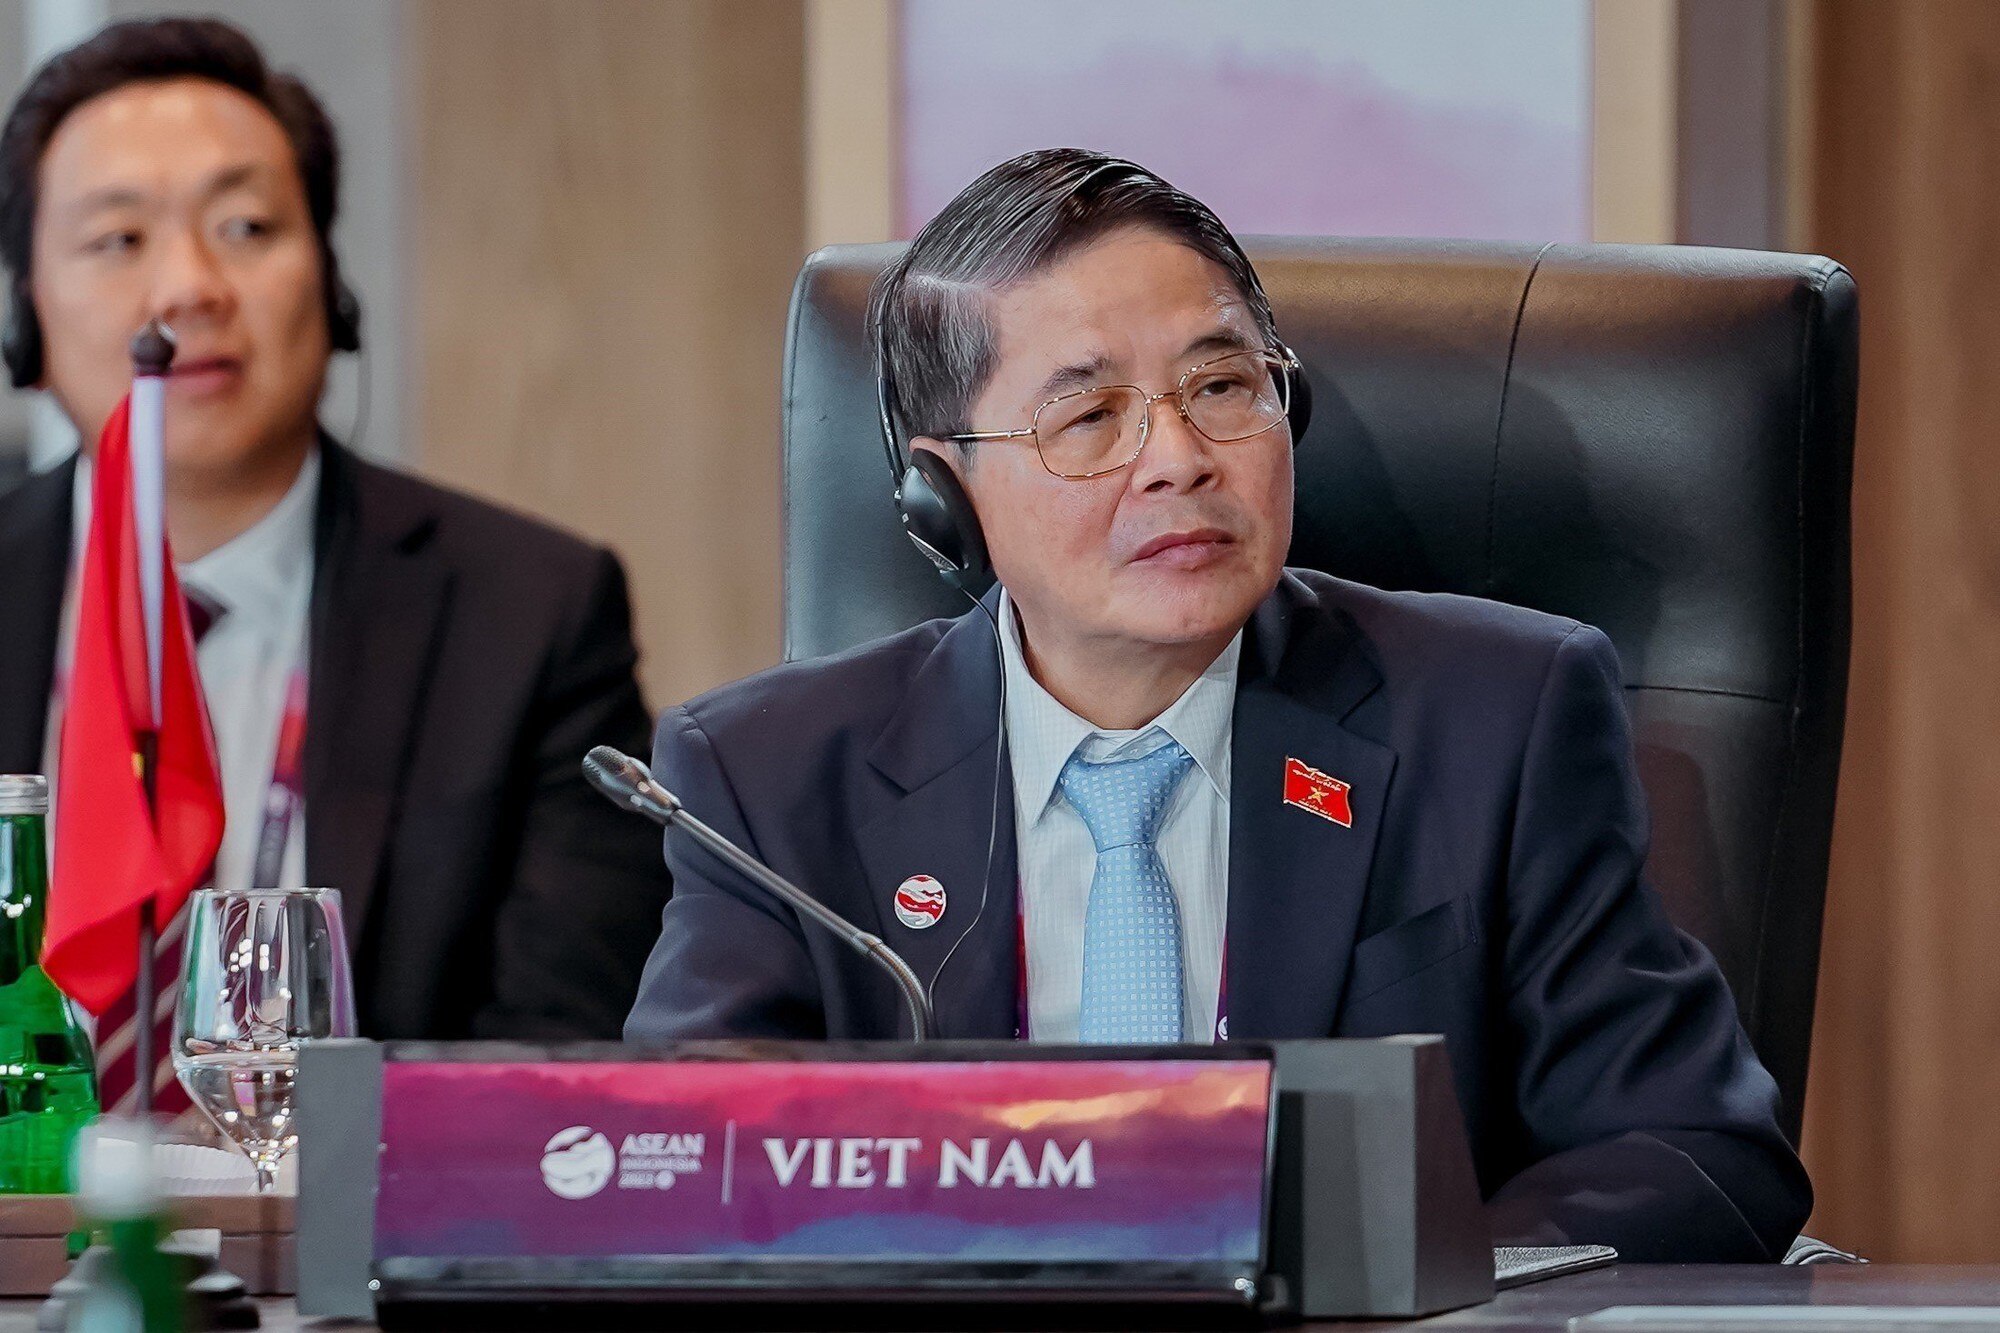 Thủ tướng nêu ba định hướng phối hợp giữa lập pháp và hành pháp trong ASEAN - Ảnh 2.